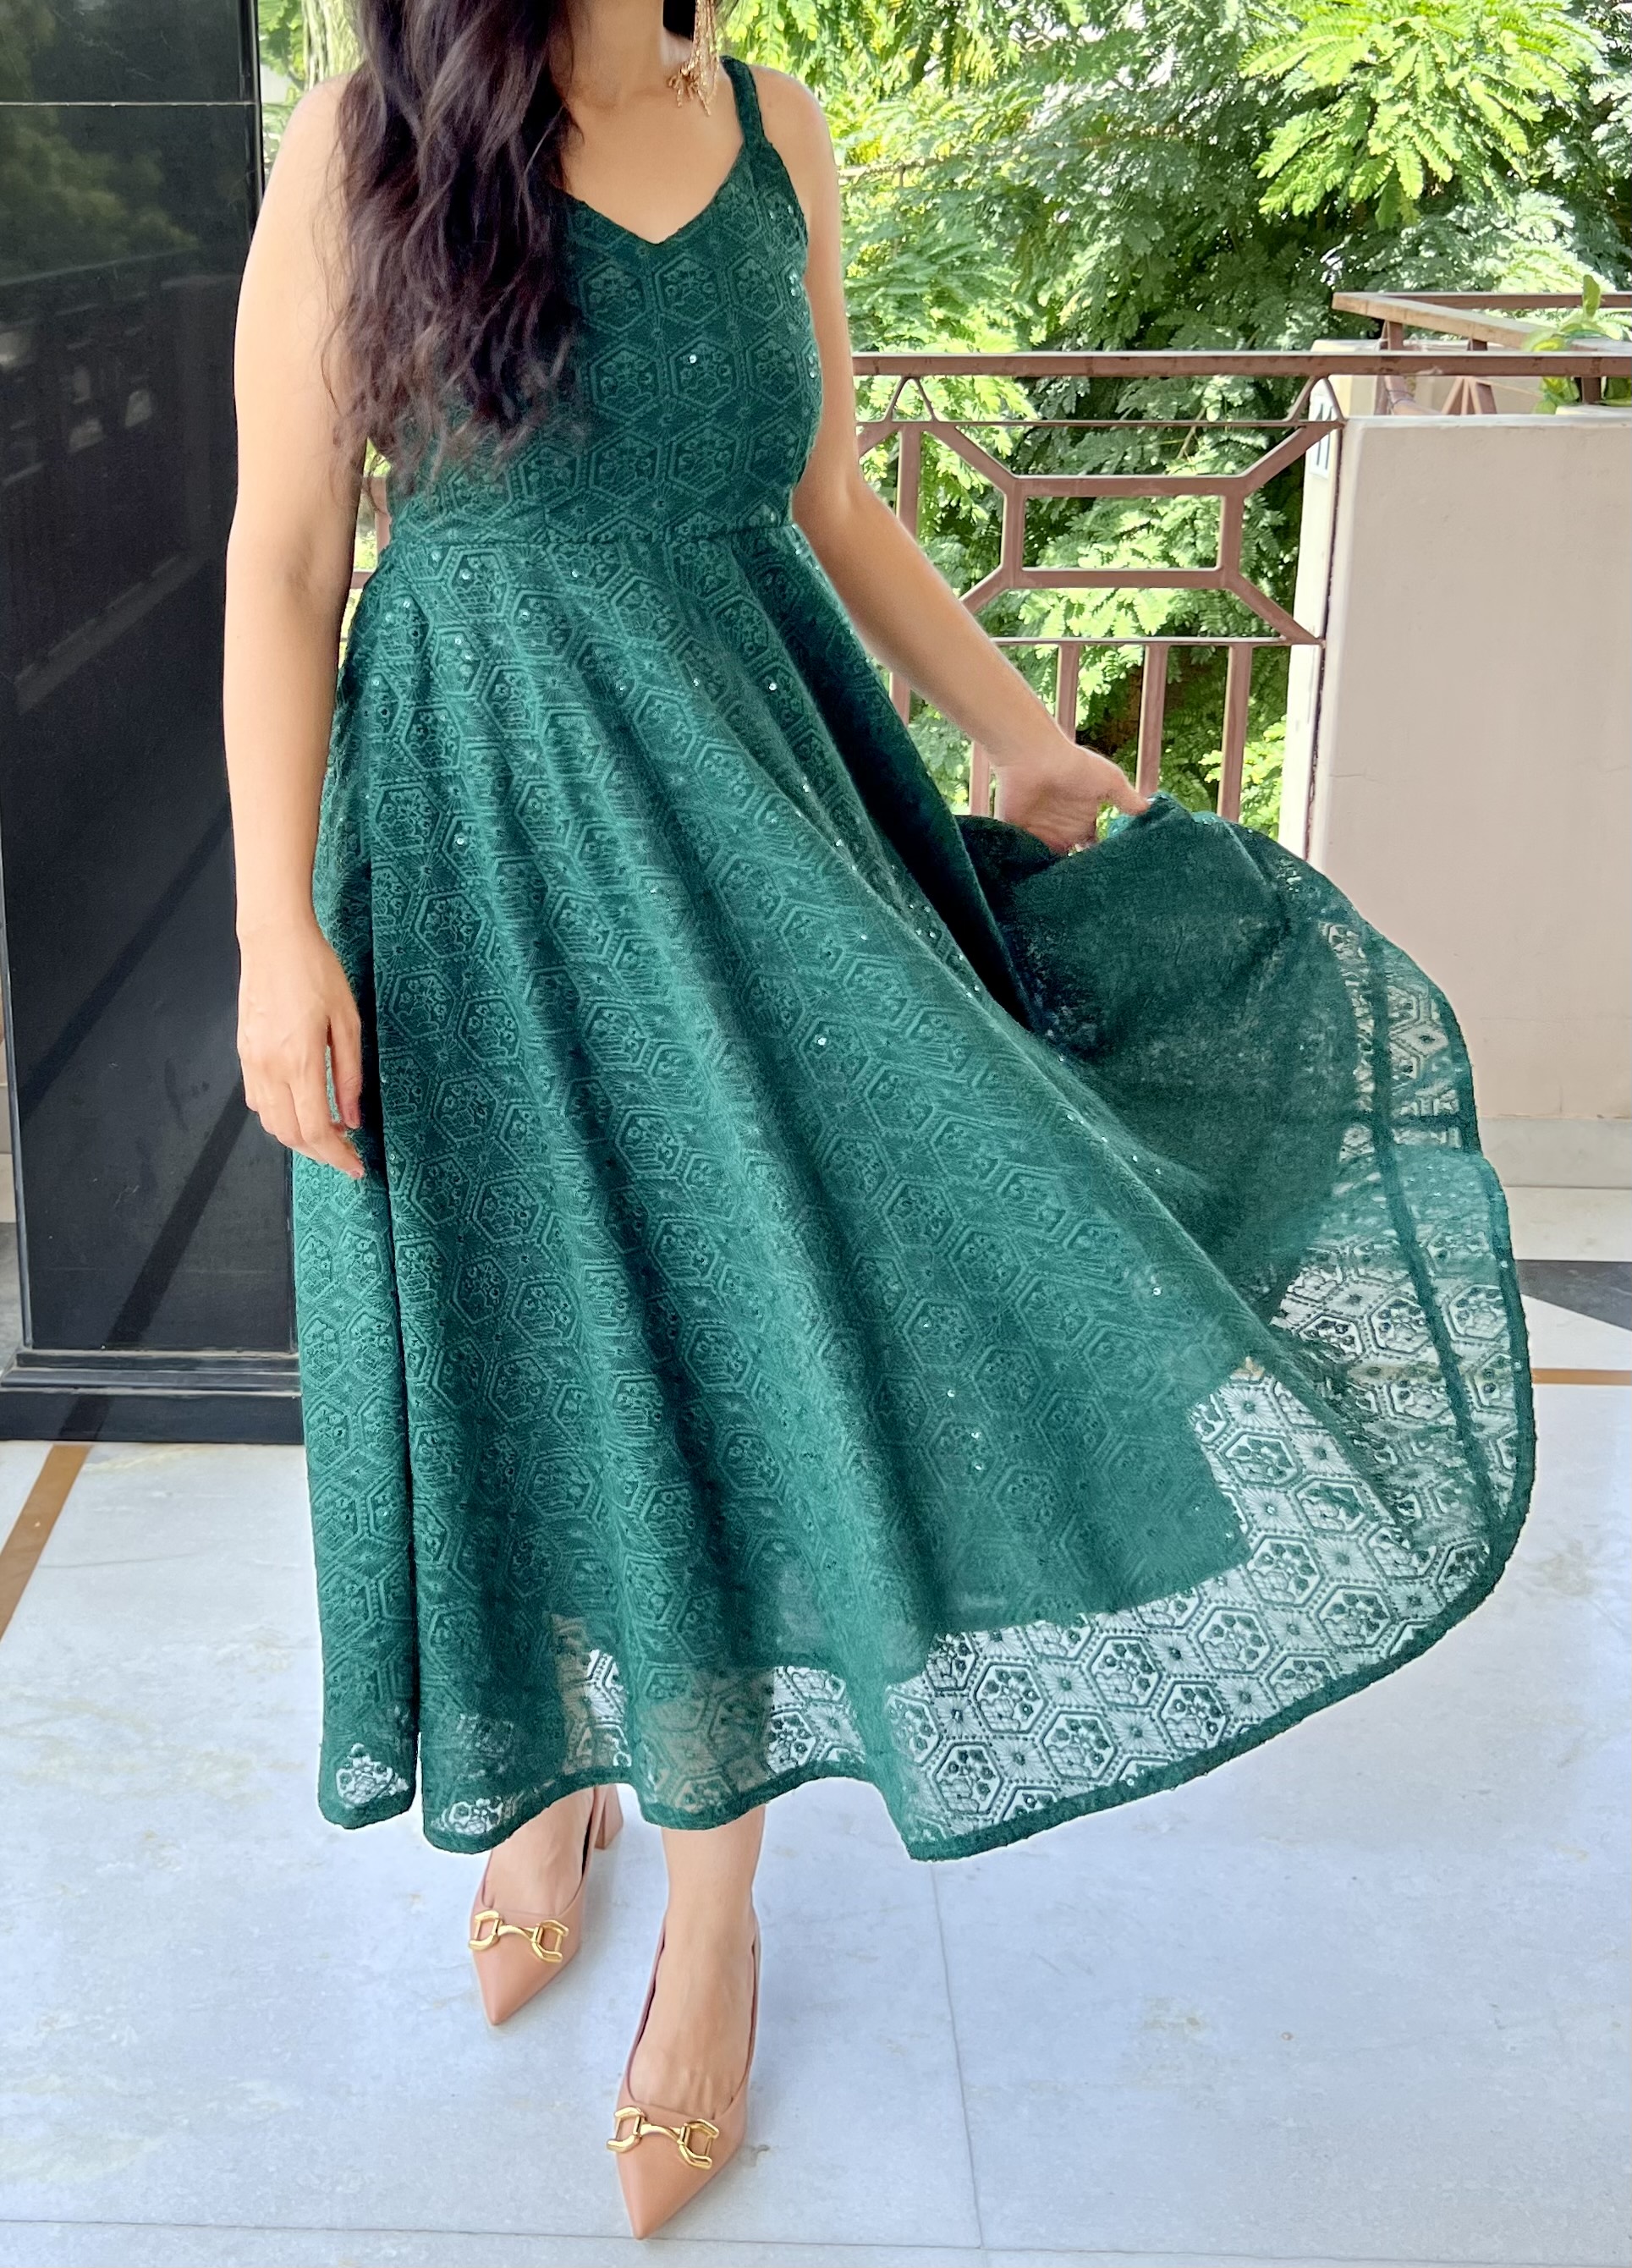 Summer Fashion Tips Stylish Long Kurti Design With Jeans - Amar Ujala Hindi  News Live - आज का फैशन टिप्स:लॉन्ग कुर्ती के ये डिजाइन हैं ट्रेंड में,  क्लासी लुक के लिए जींस